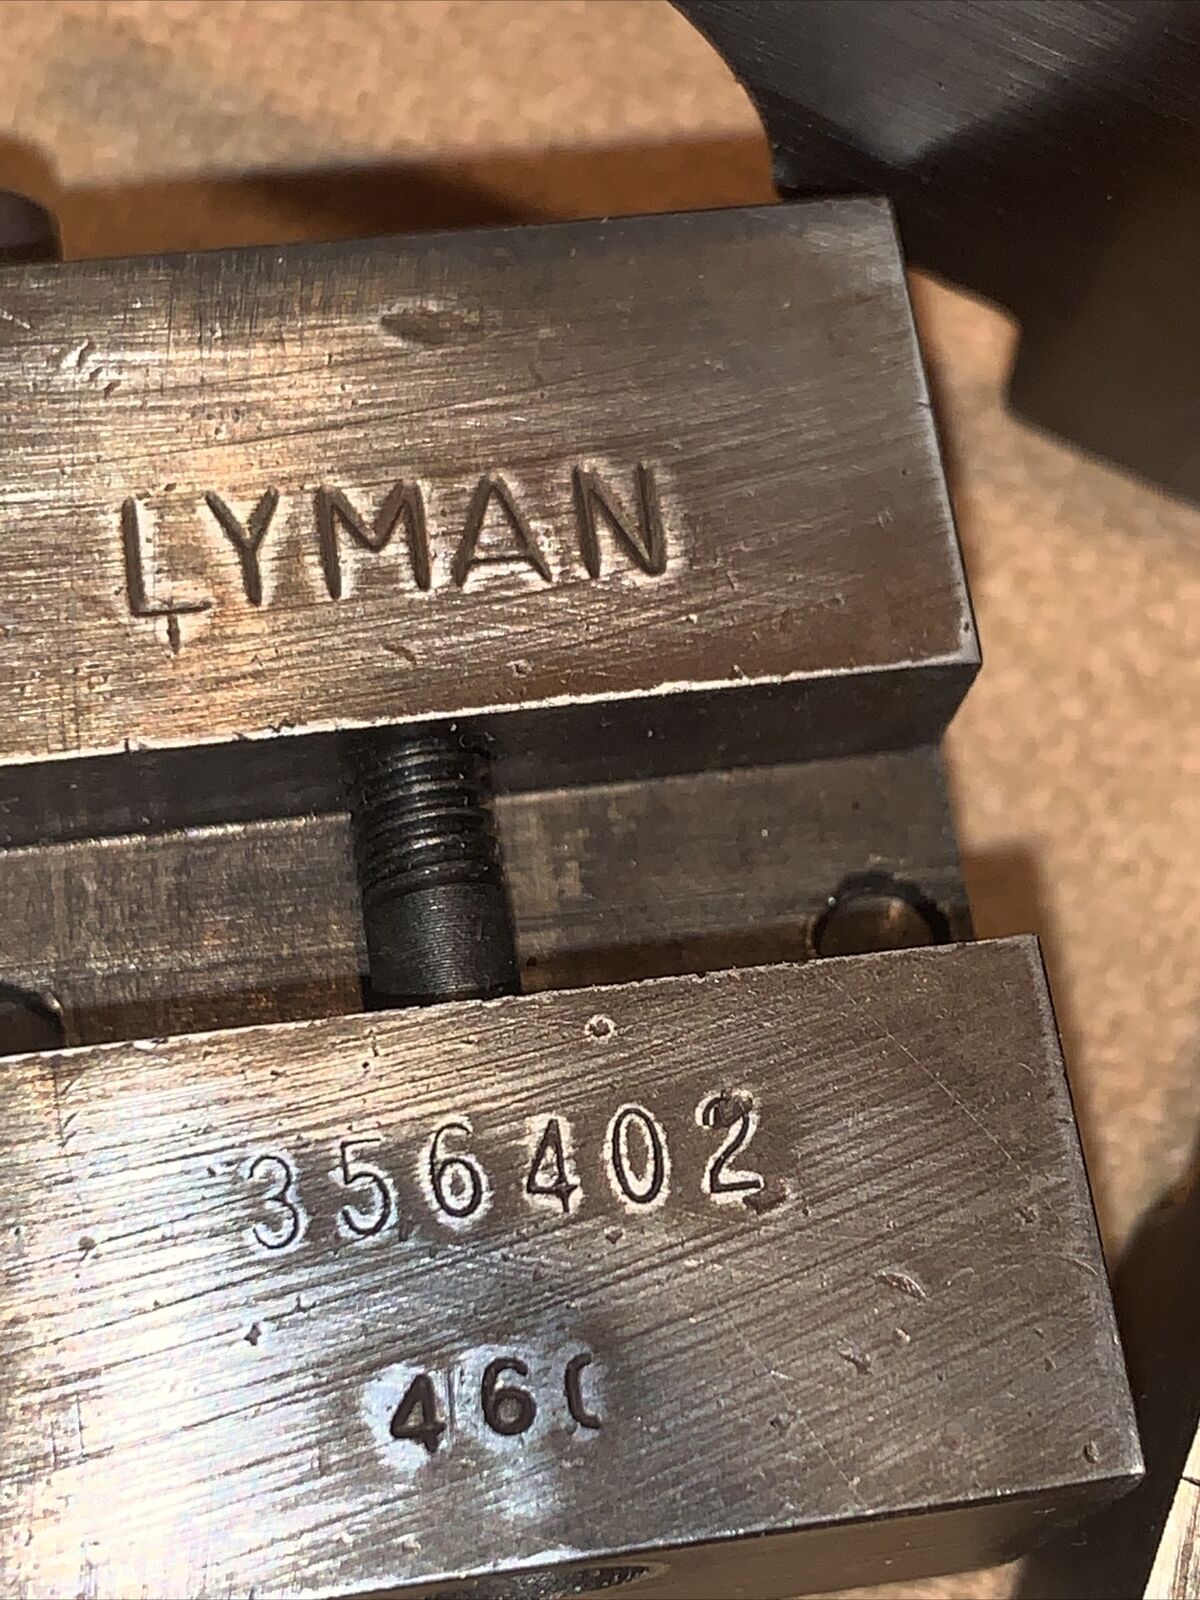 Lyman Bullet Mold 9mm 356402 120 Gr